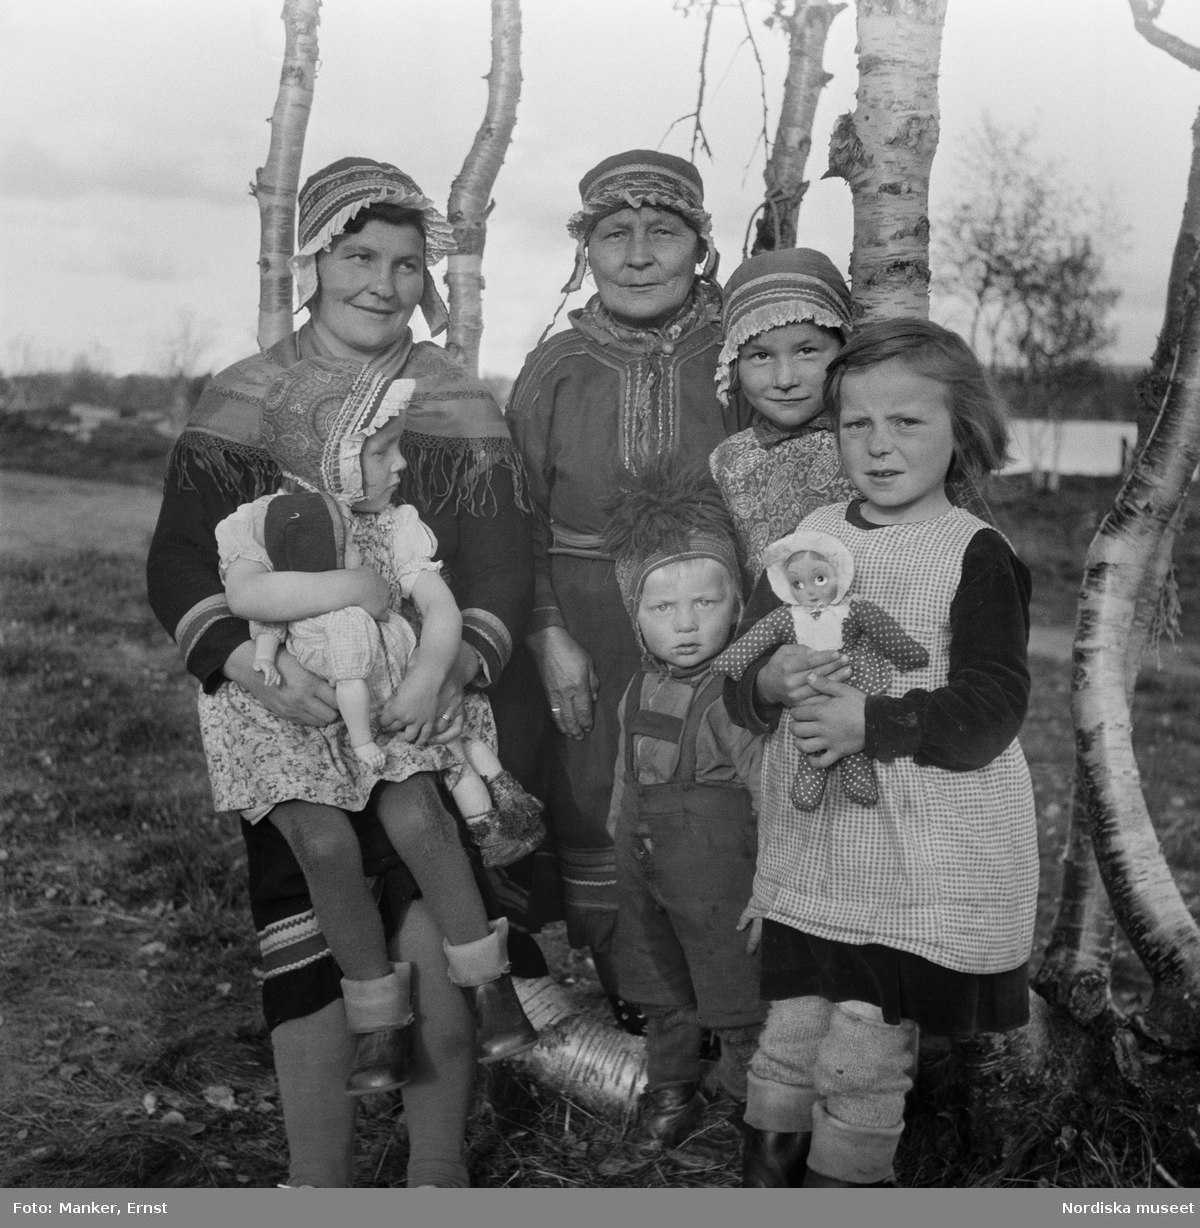 Porträtt av tre generationer samiska kvinnor och barn. Flickorna med dockor i famnen. Britta Prost (född Sevä 1912) med dottern Elin Ragnhild (född 1944), svärmor/faster Susanna Prost (född Sevä) och brorsbarnen Ellen Margareta och Karl Erling. Från Nordiska museets Lappmarksundersökning.